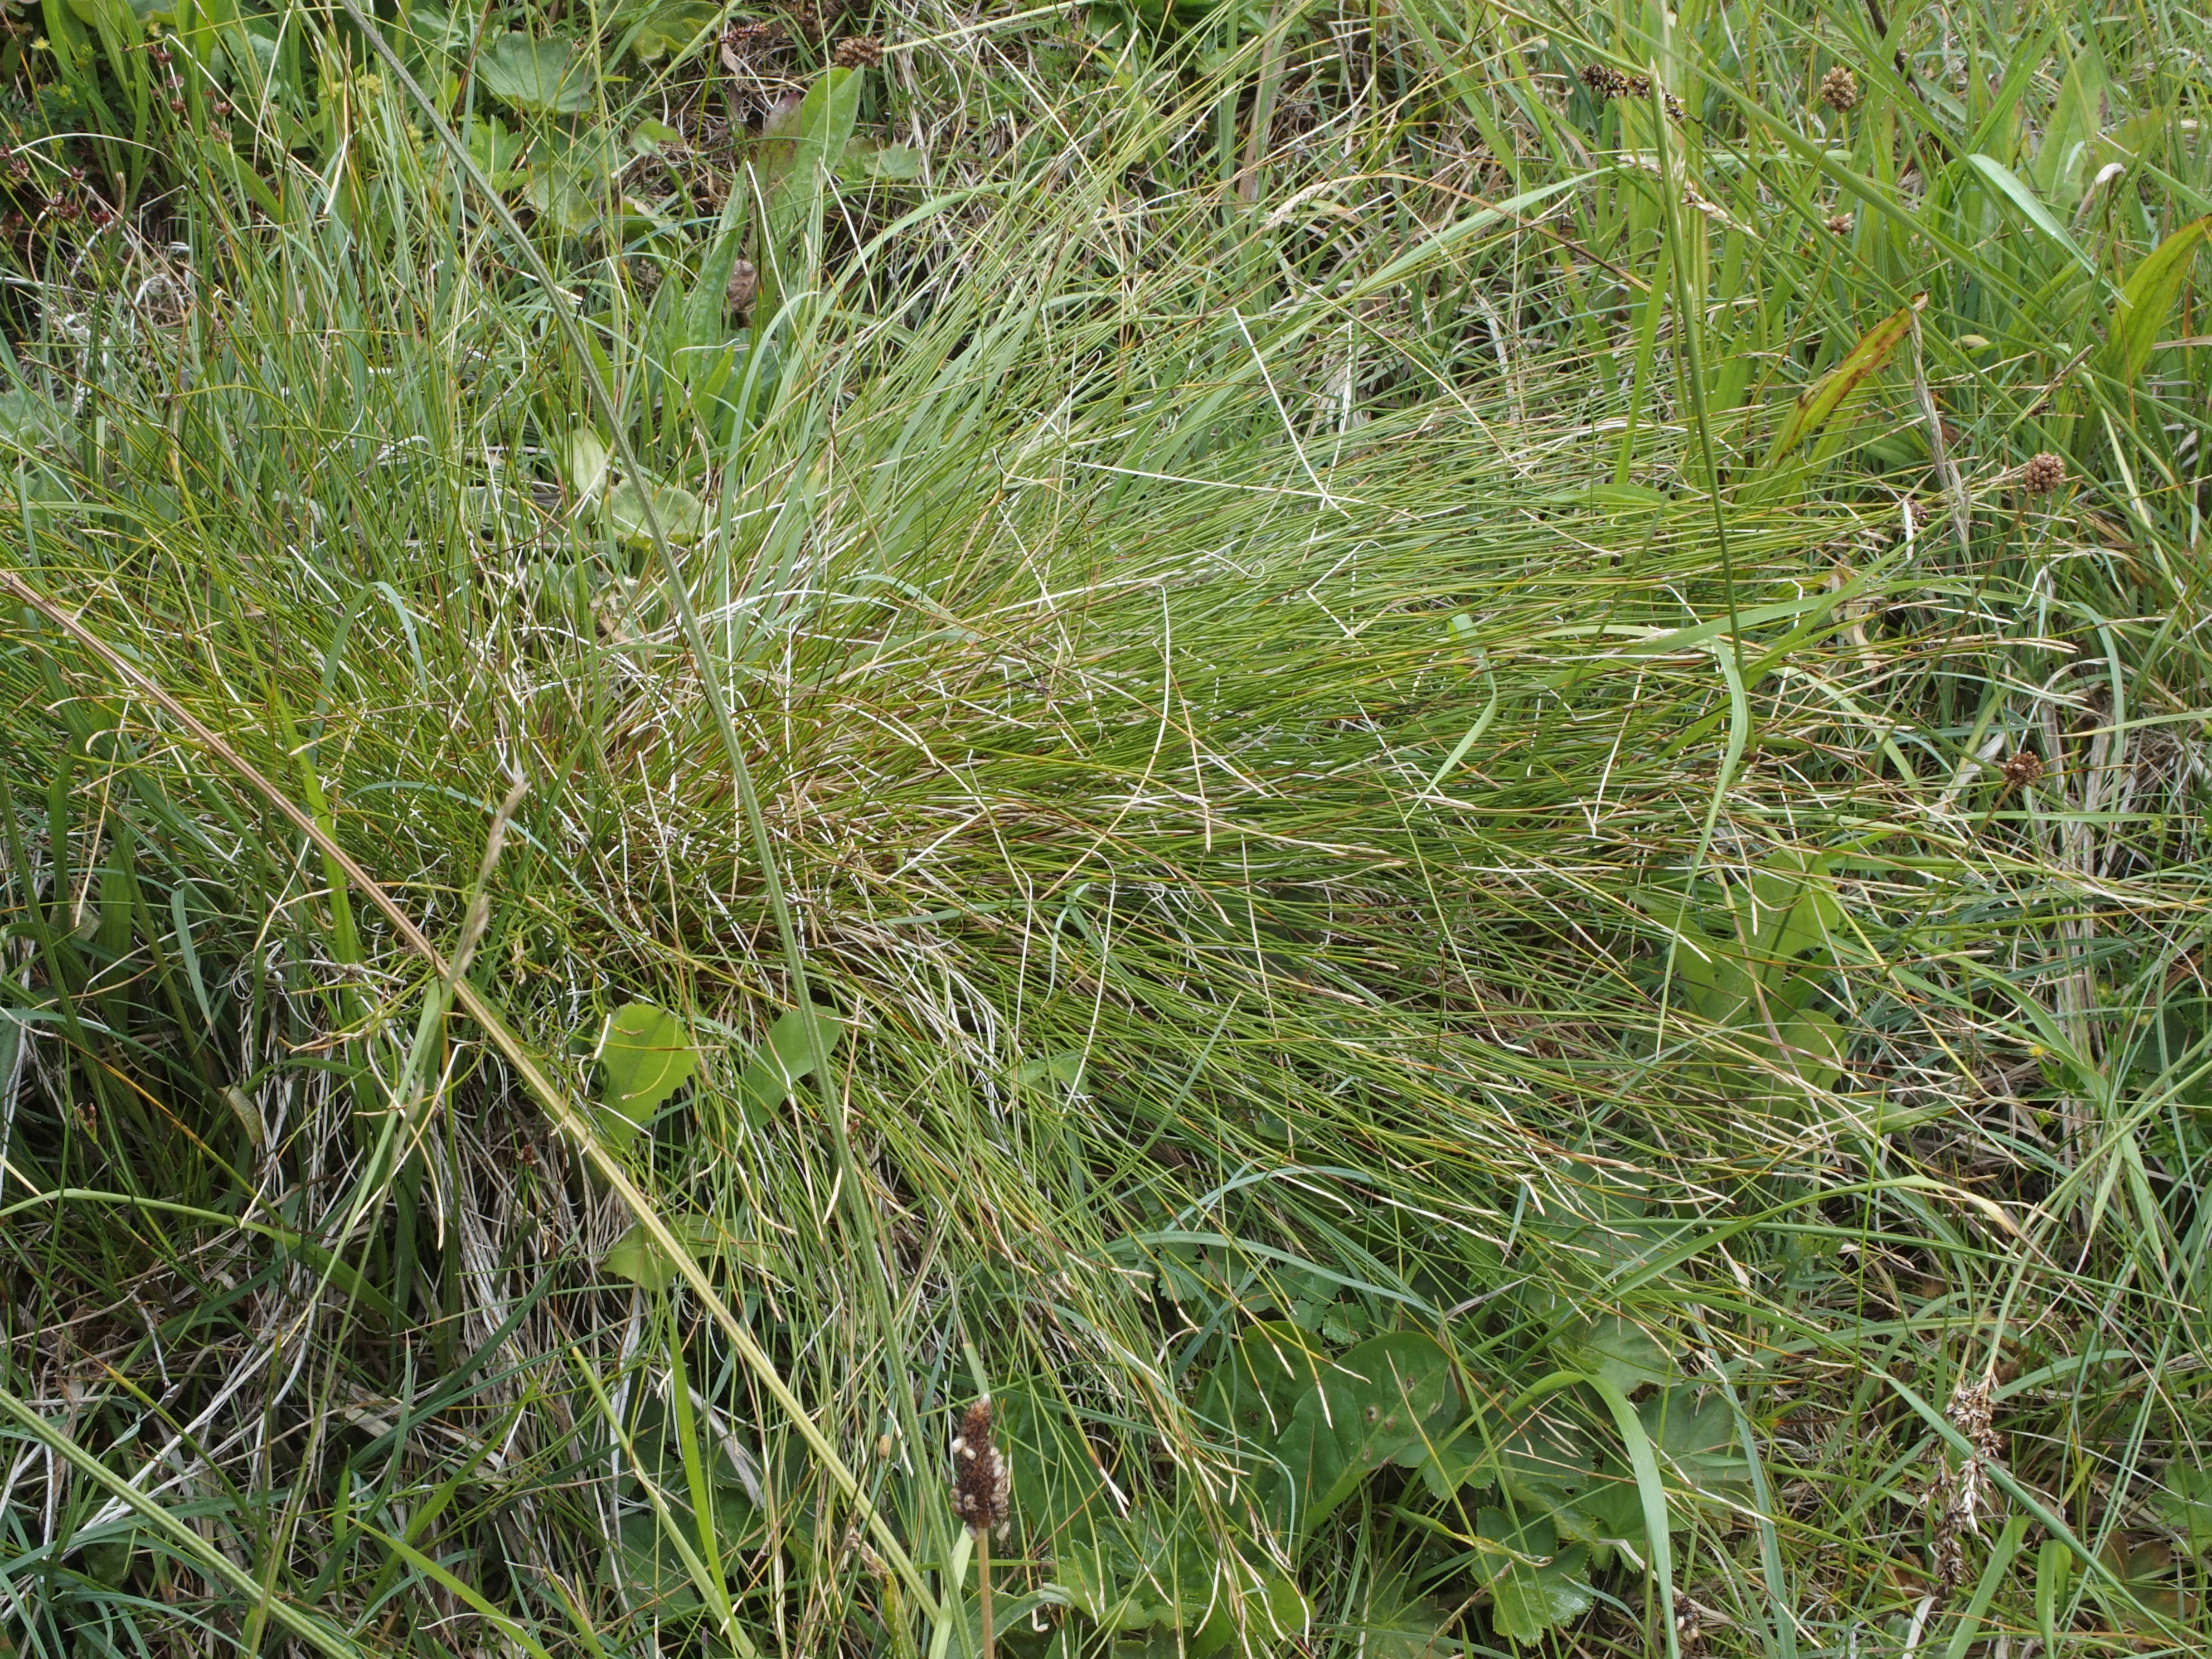 Carex davalliana (door Willemien Troelstra)